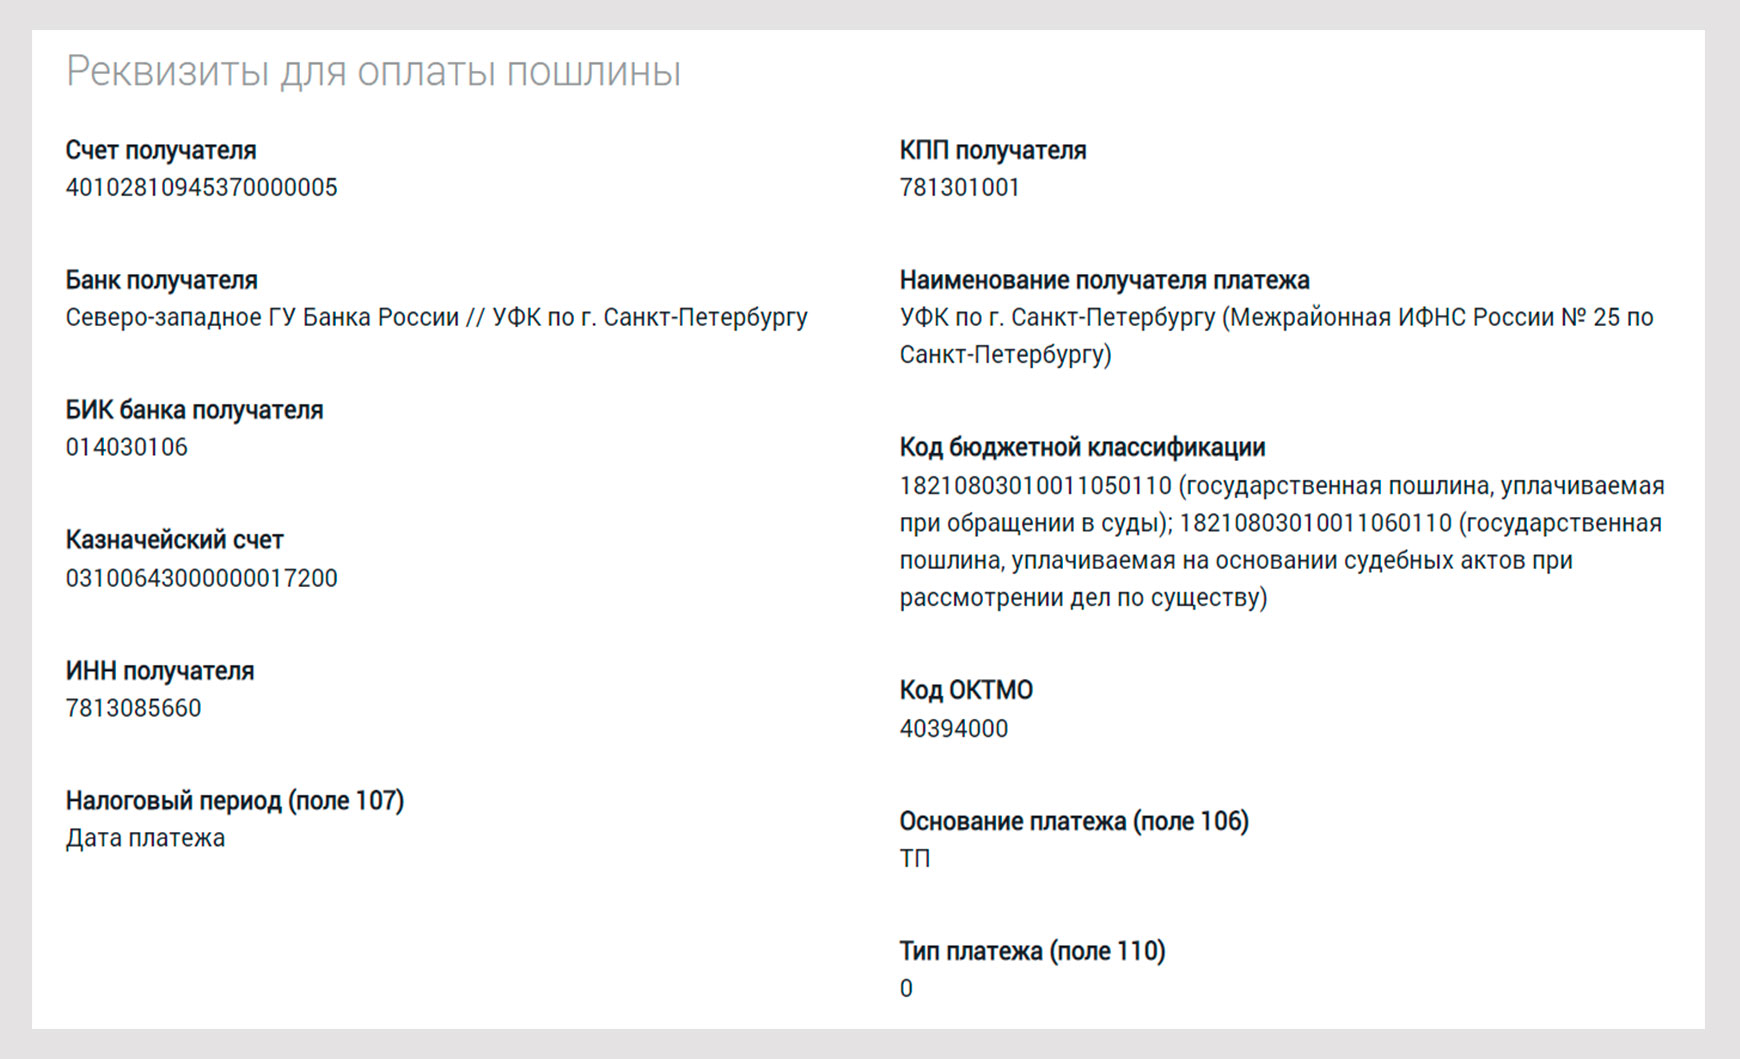 Реквизиты для оплаты пошлины по 156 судебному участку СПб.